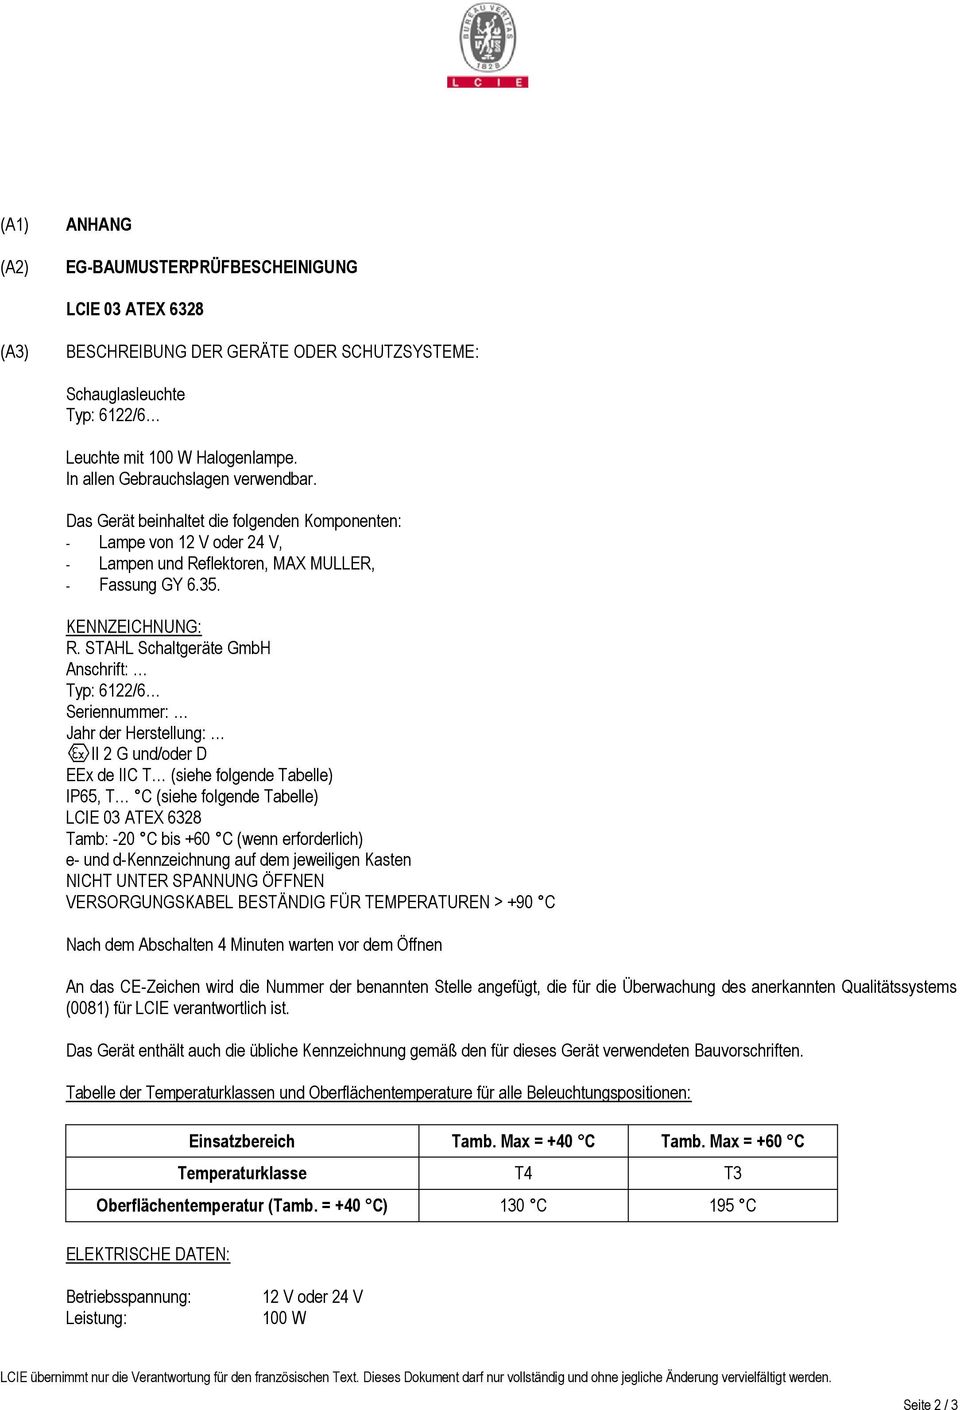 STAHL Schaltgeräte GmbH Anschrift: Typ: 6122/6 Seriennummer: Jahr der Herstellung: II 2 G und/oder D EEx de IIC T (siehe folgende Tabelle) IP65, T C (siehe folgende Tabelle) Tamb: -20 C bis +60 C